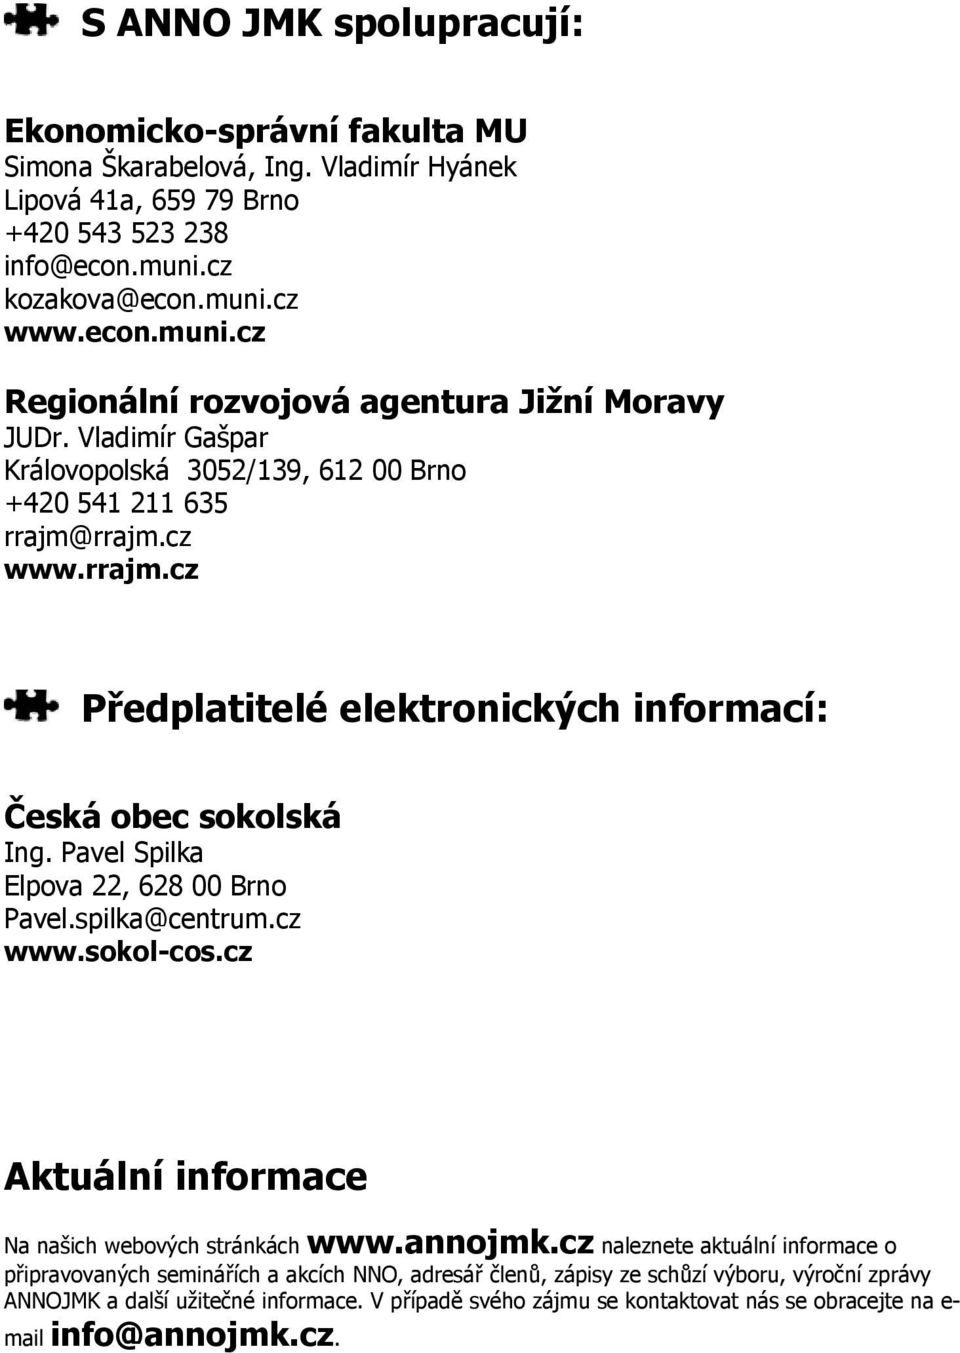 rrajm.cz www.rrajm.cz Předplatitelé elektronických informací: Česká obec sokolská Ing. Pavel Spilka Elpova 22, 628 00 Brno Pavel.spilka@centrum.cz www.sokol-cos.